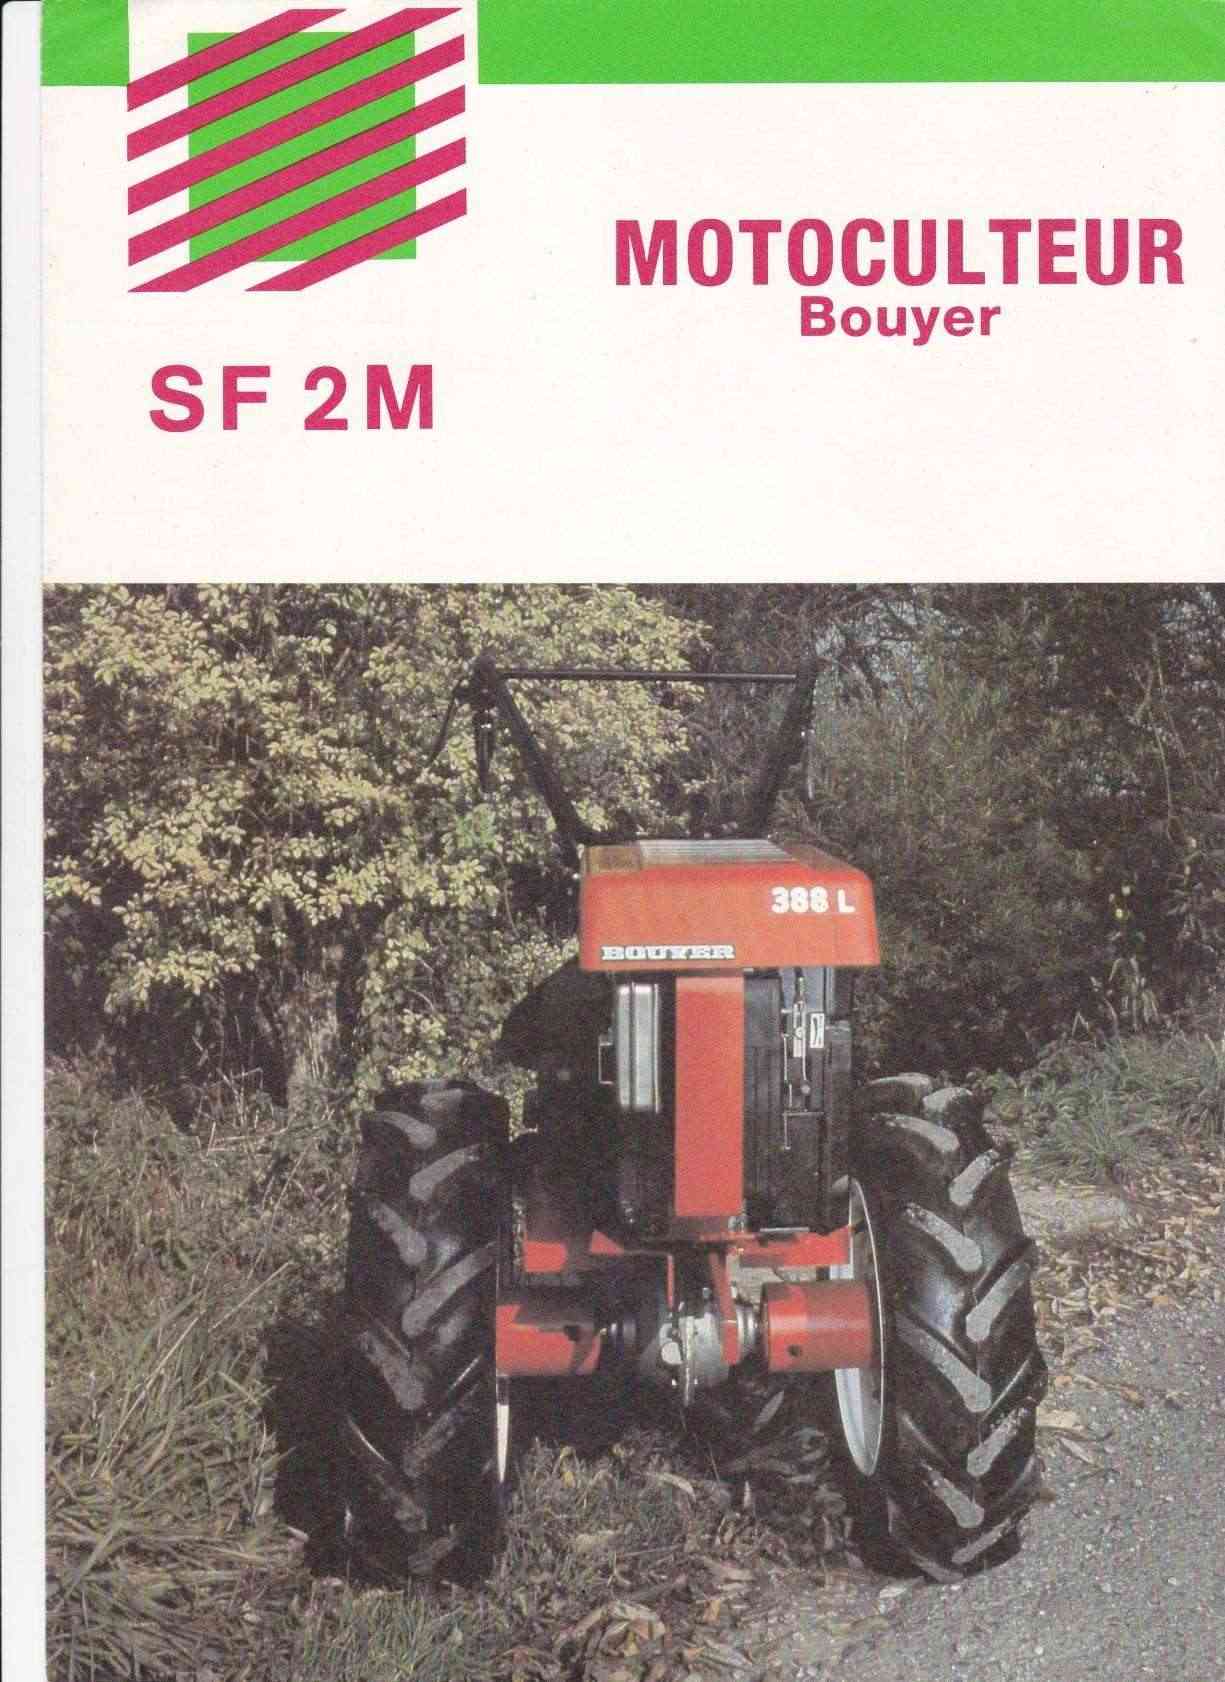 Bouyer époque SF2M, brochure Uw1113